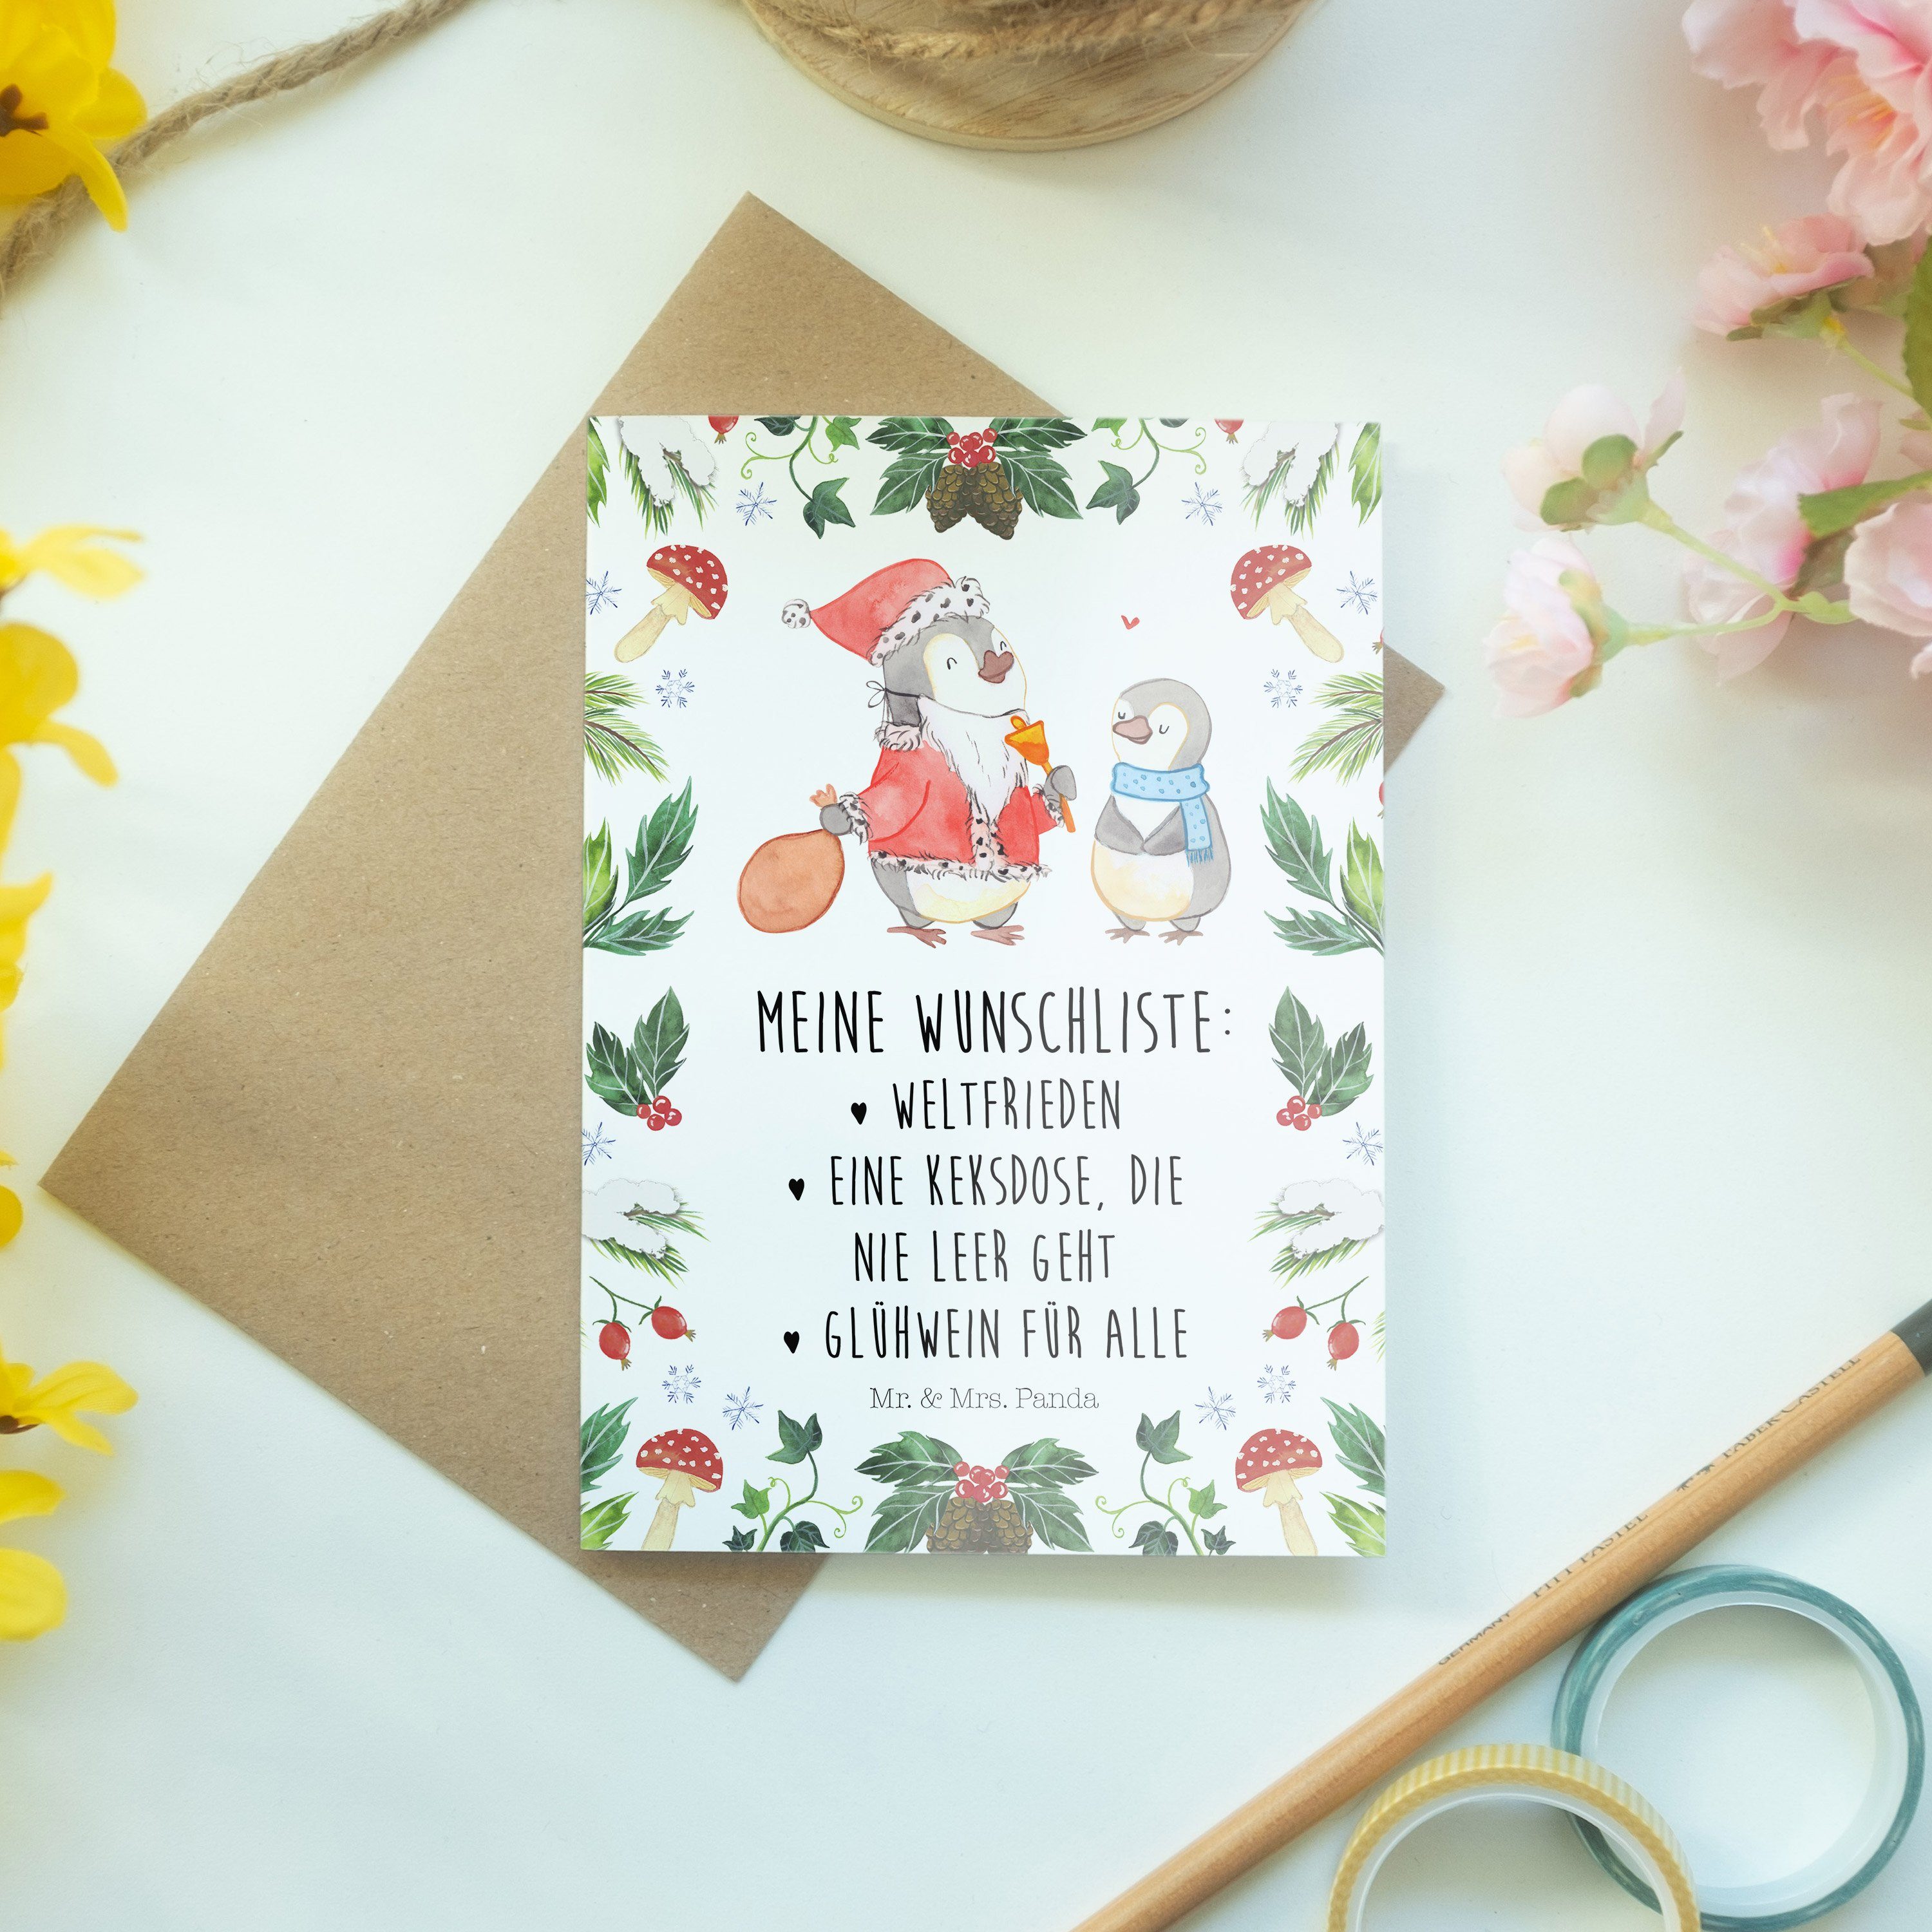 Mr. & Mrs. Panda Pinguin Weiß Geschenk, - Einladungskarte, Grußkarte - Advent, Wunschliste Hochz